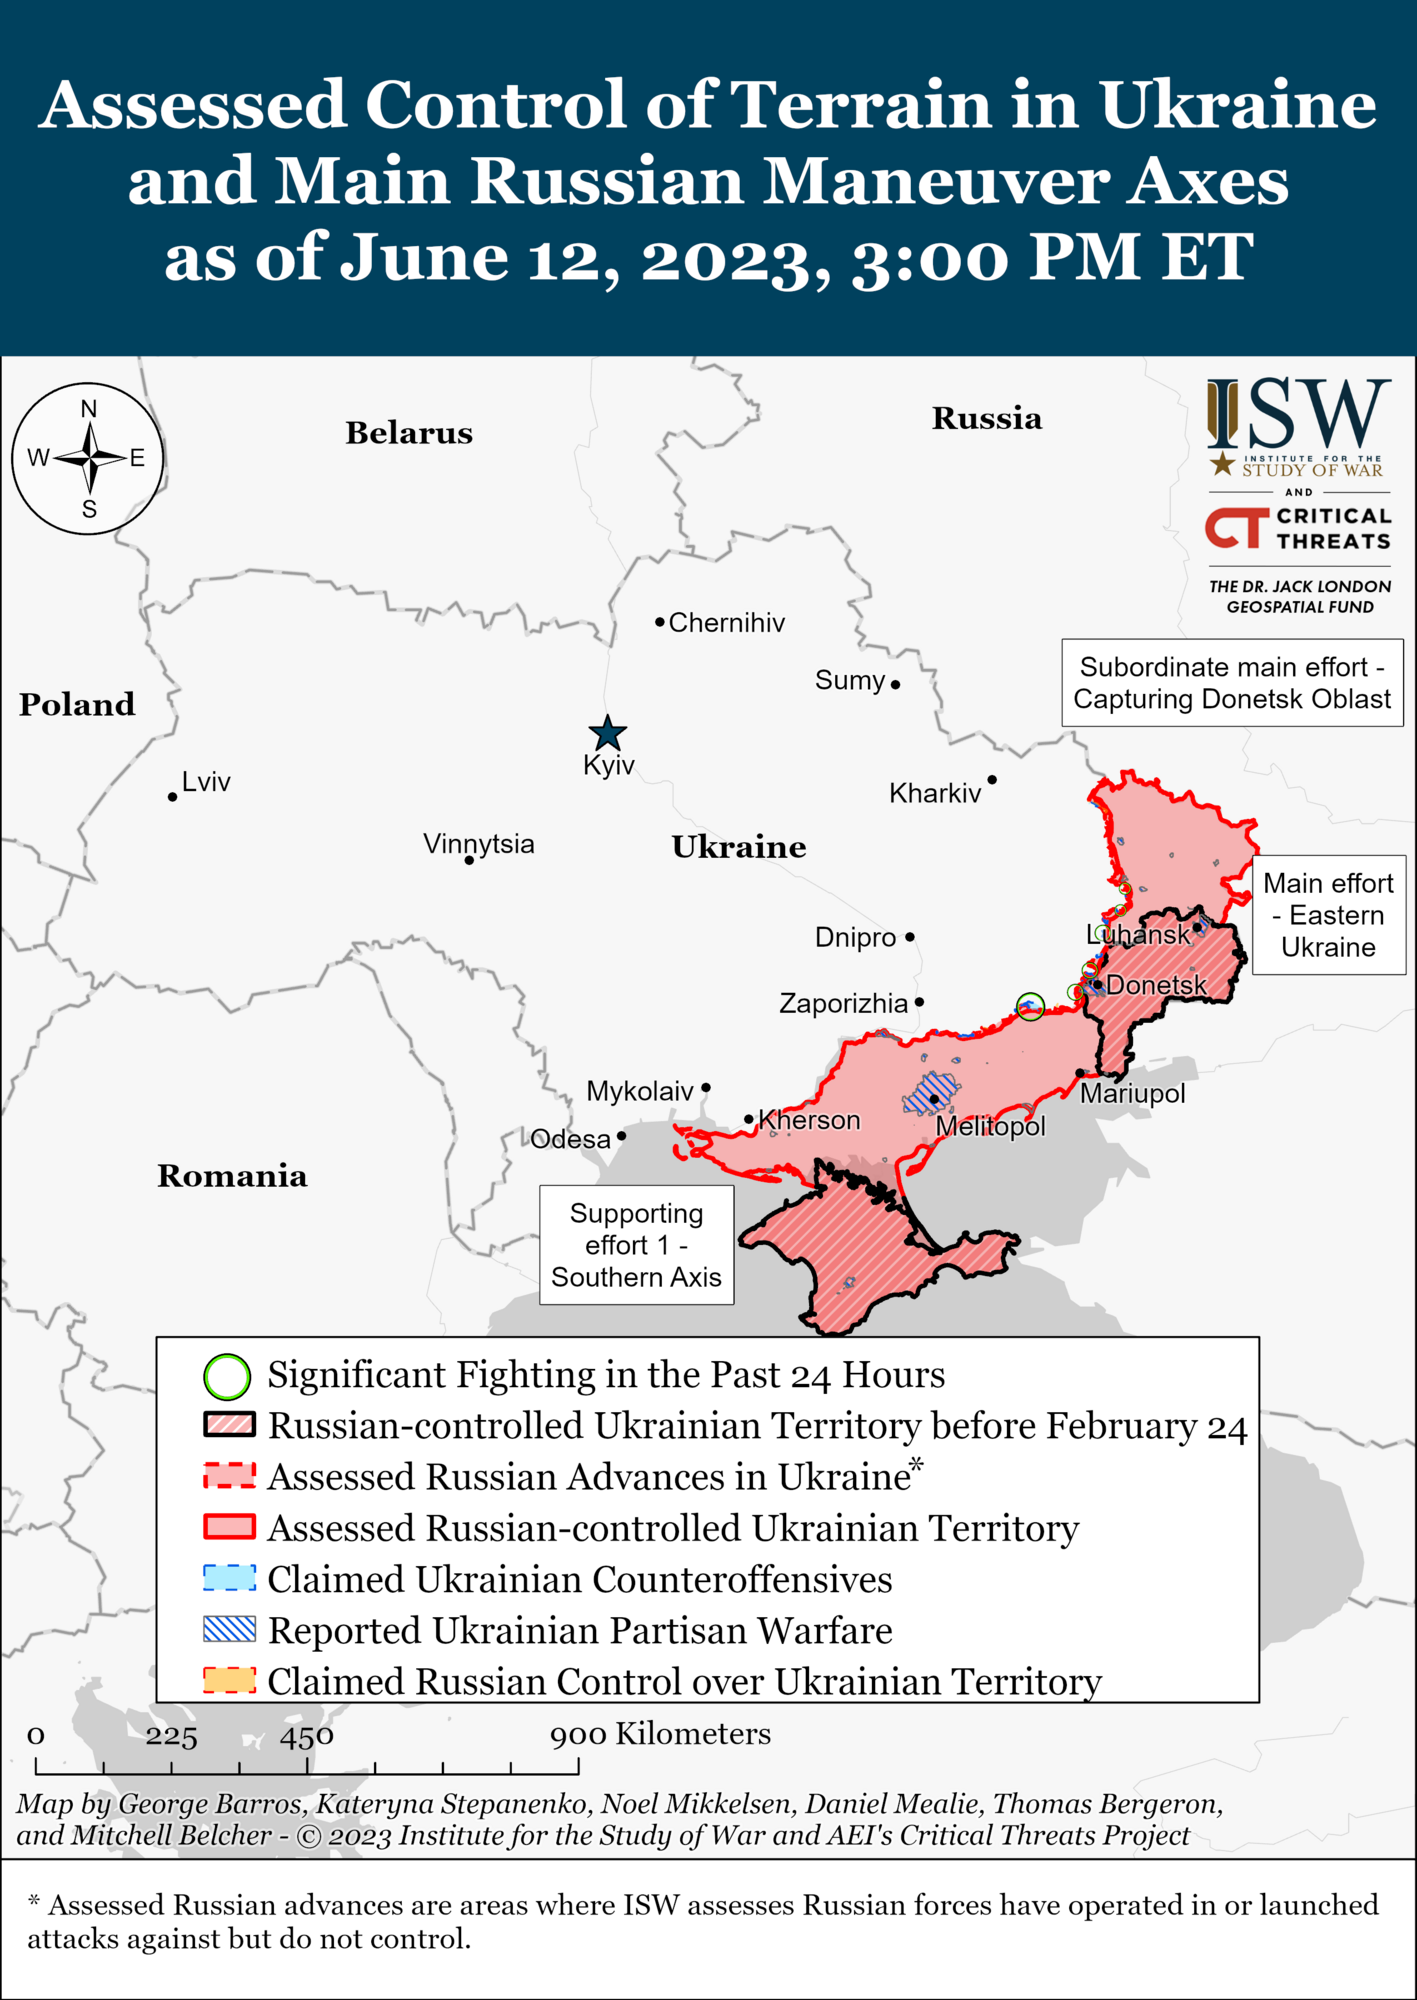 Контрнаступательные операции ВСУ продолжаются на трех направлениях: в ISW указали на успехи Украины